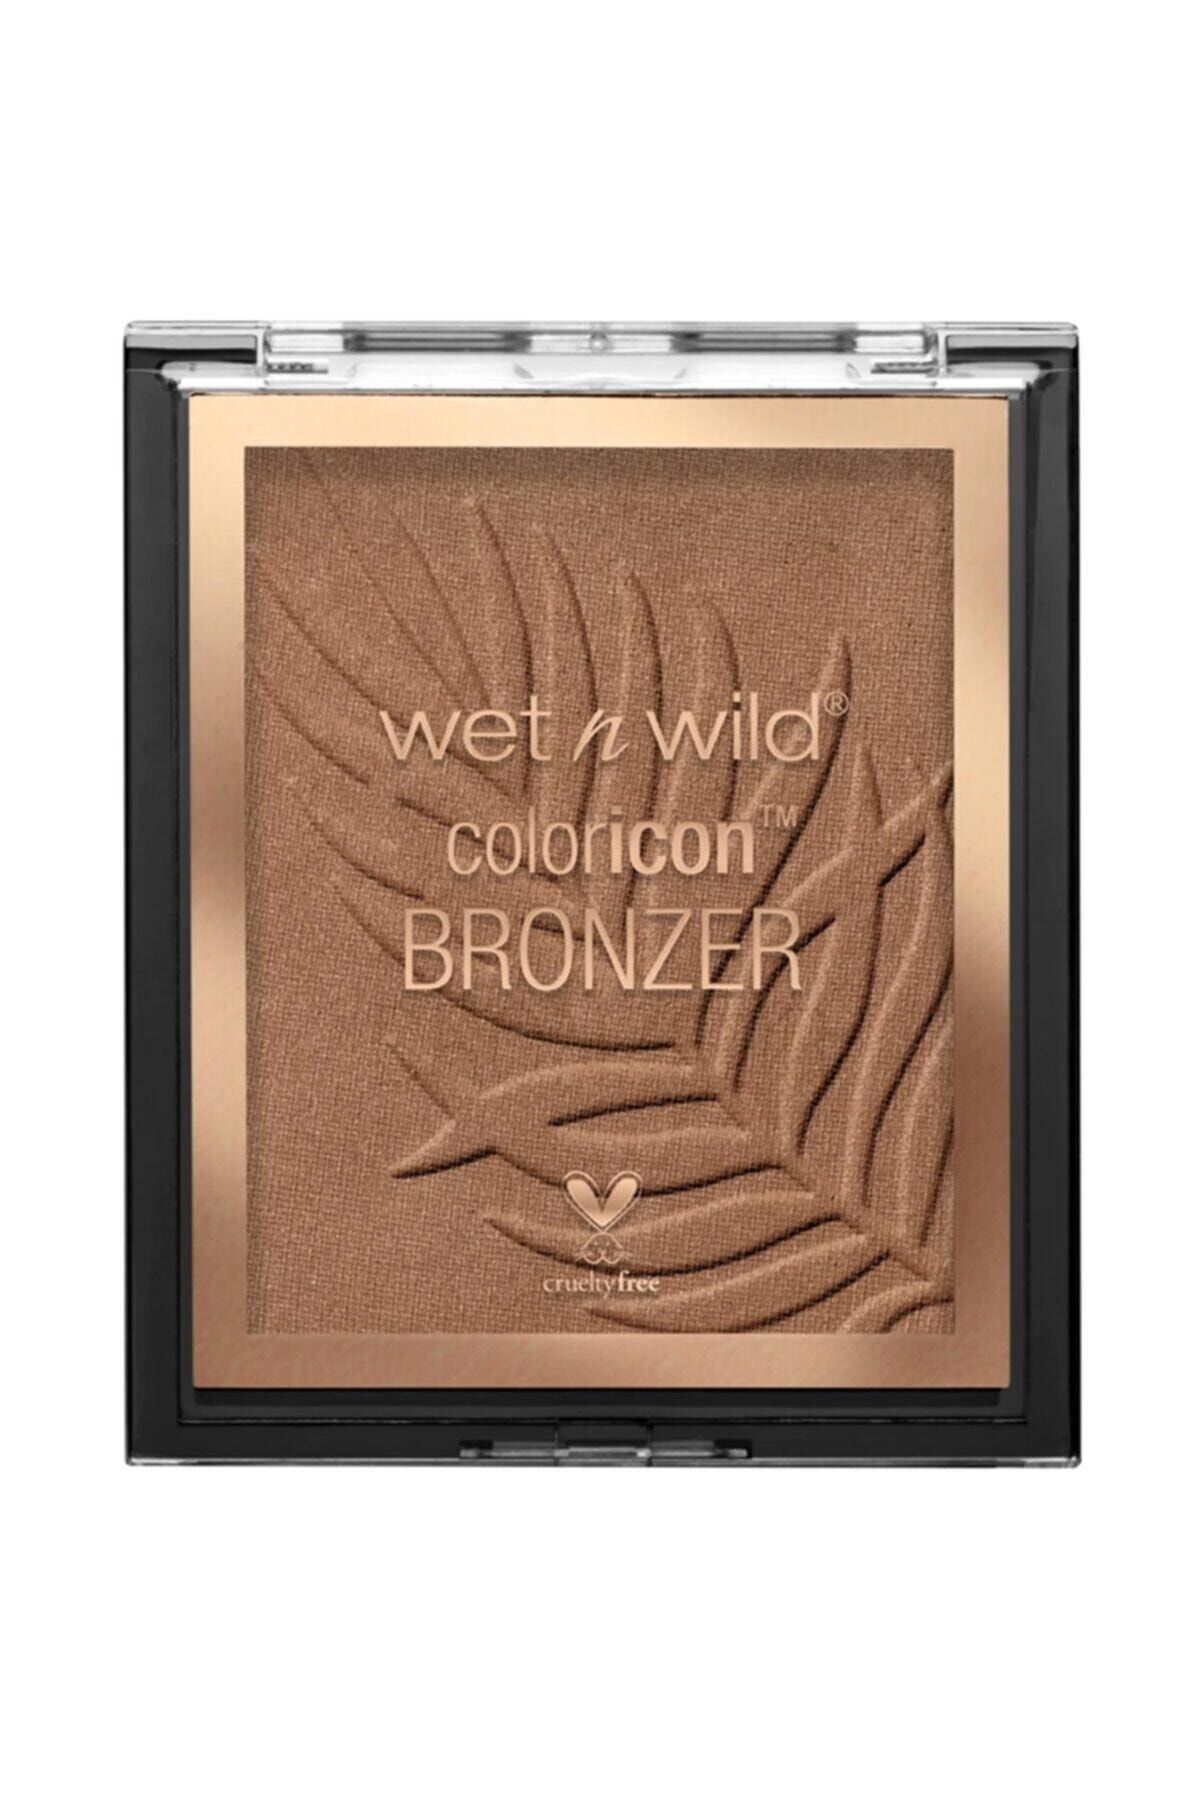 WET N WİLD Wet N Wild Coloricon Bronzer E743b